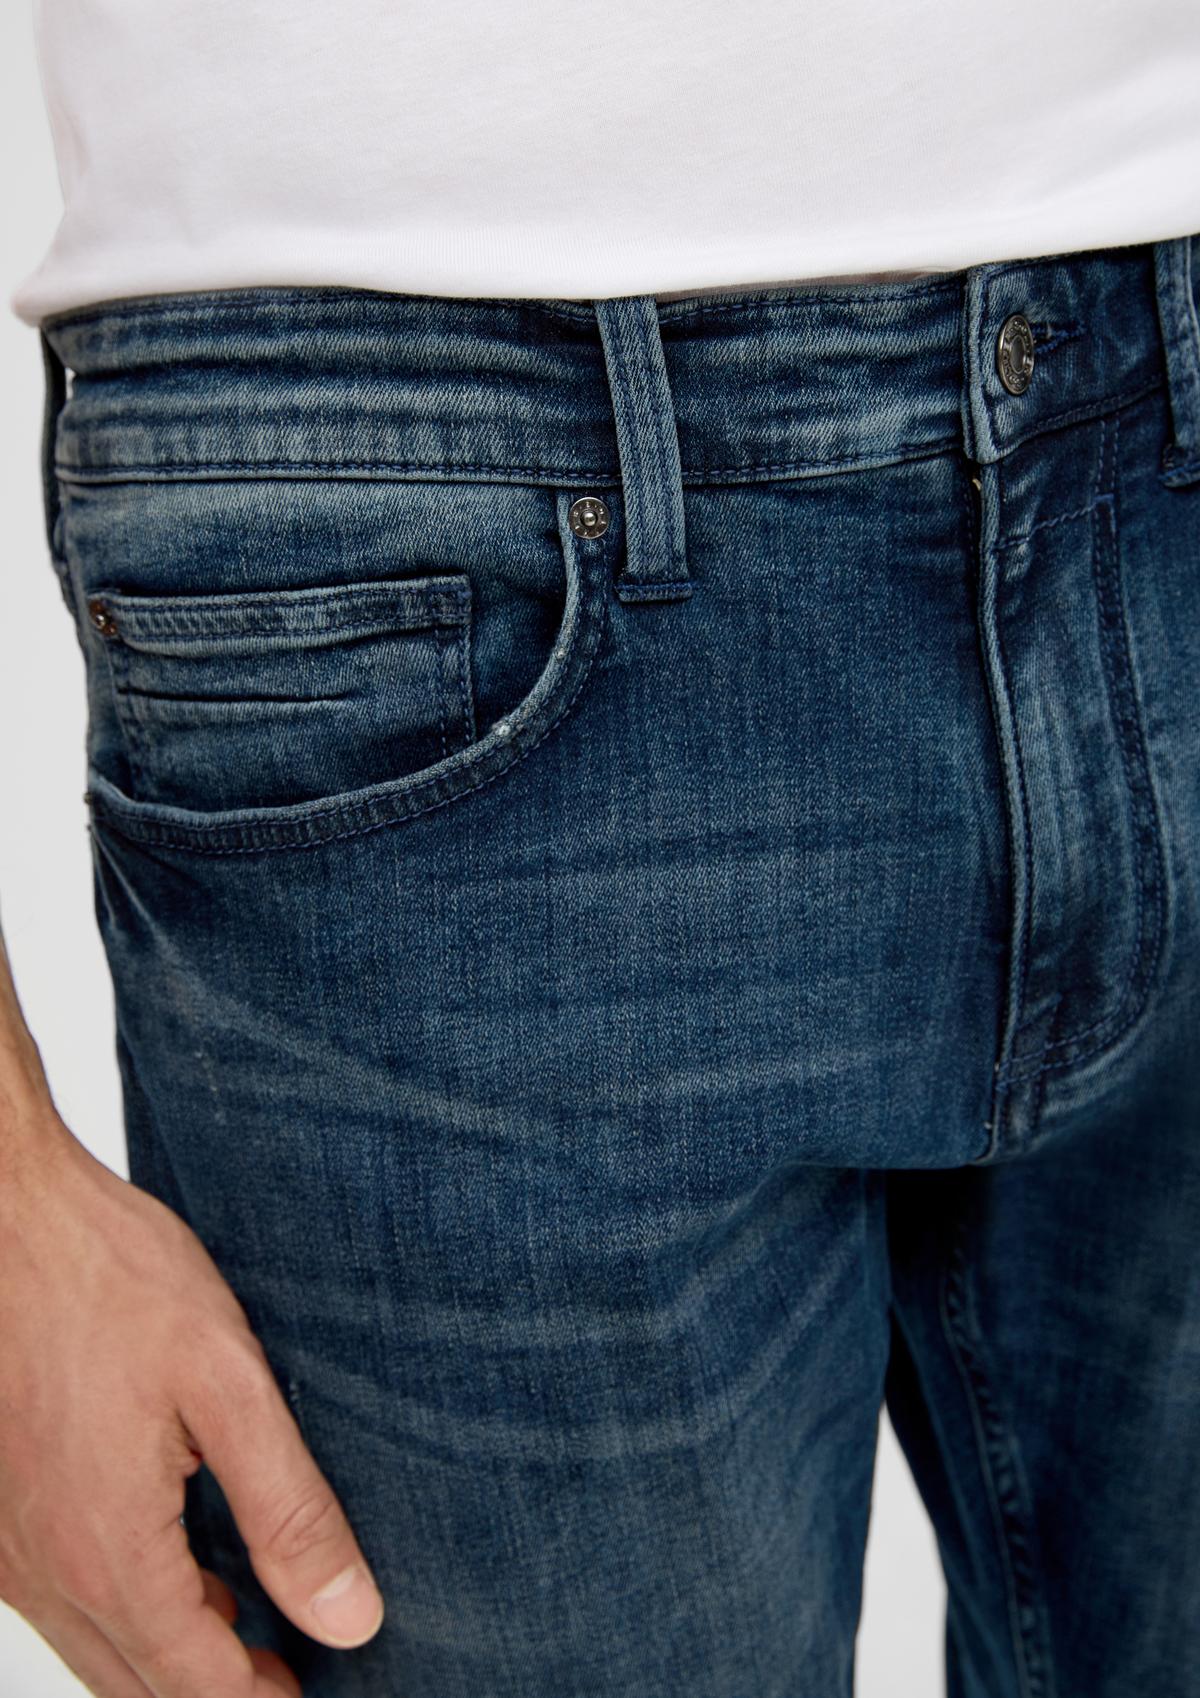 s.Oliver Jeans / Regular Fit / Mid Rise / Tapered Leg / 5-Pocket-Stil